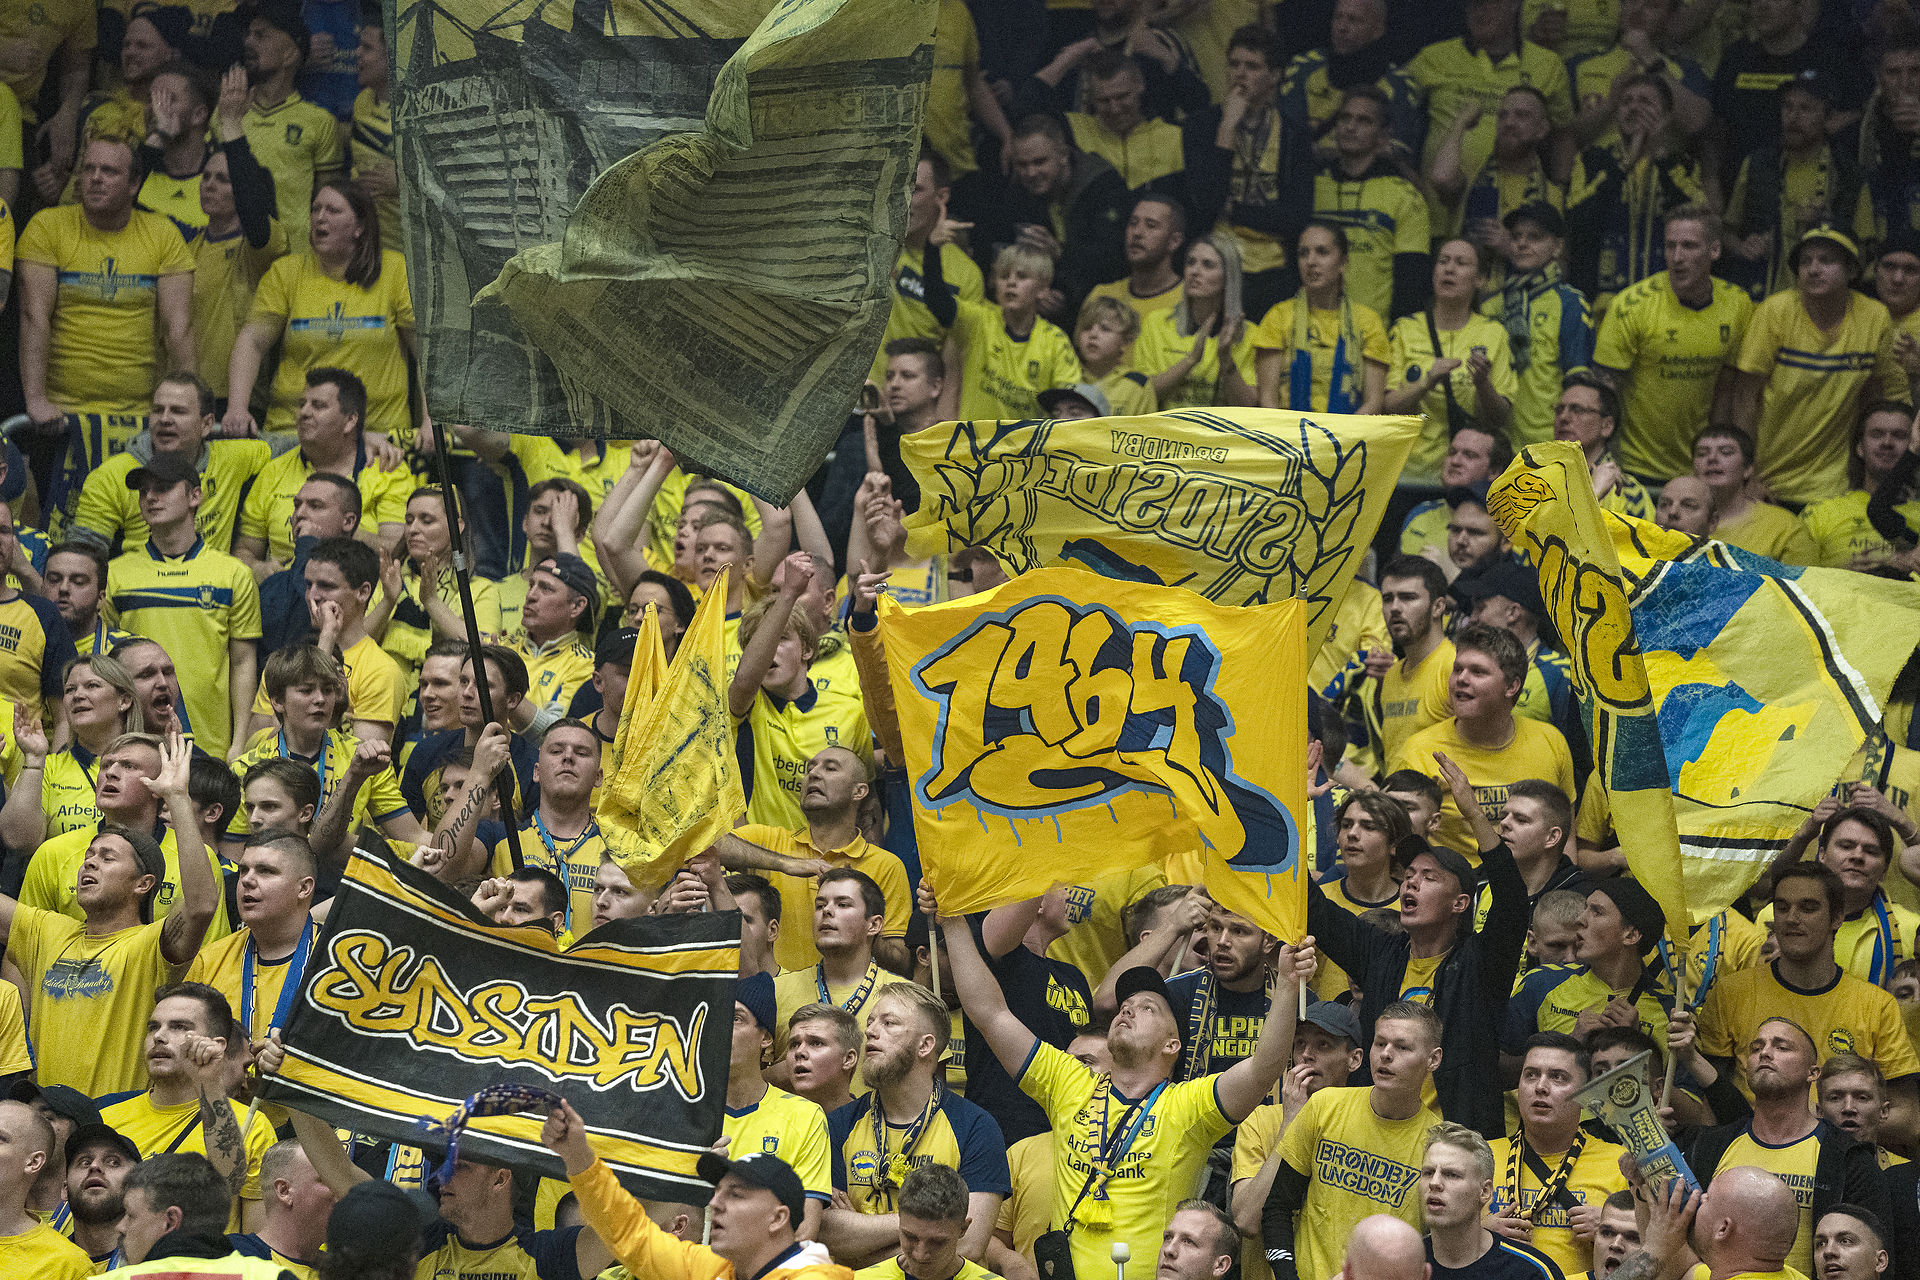 scener: Brøndby-fans amok efter exit i KMD Cup – Kaster med hegn og får U/14-holdets finale Footy.dk